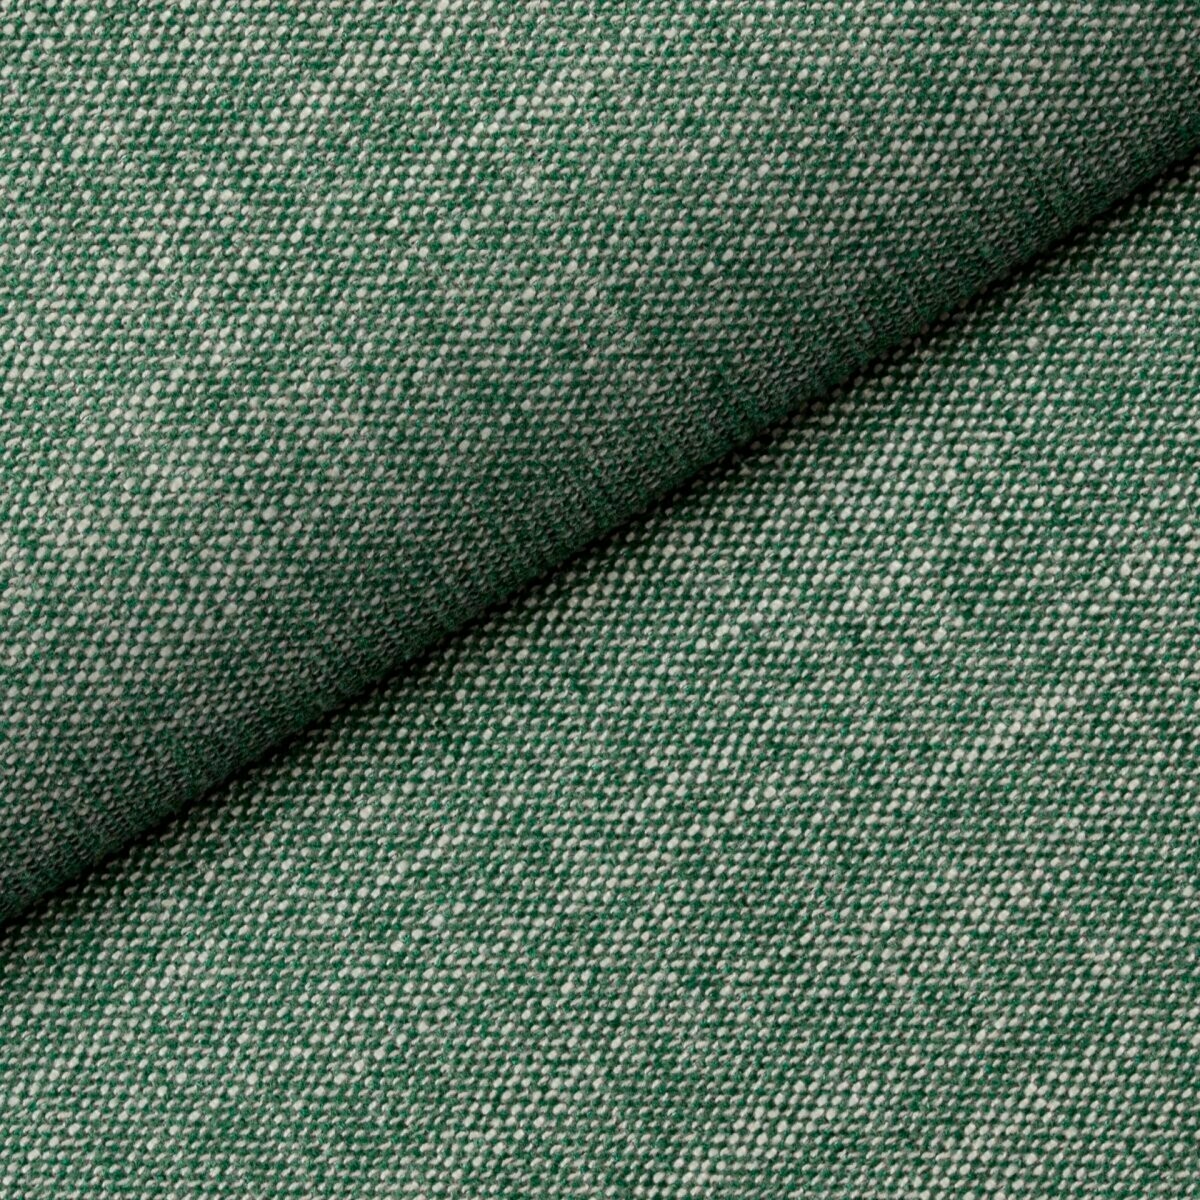 Ciekawa tkanina Tulia 03 Fargotex w niejednolitym zielonym kolorze. Wytrzymały splot i intrygująca struktura.